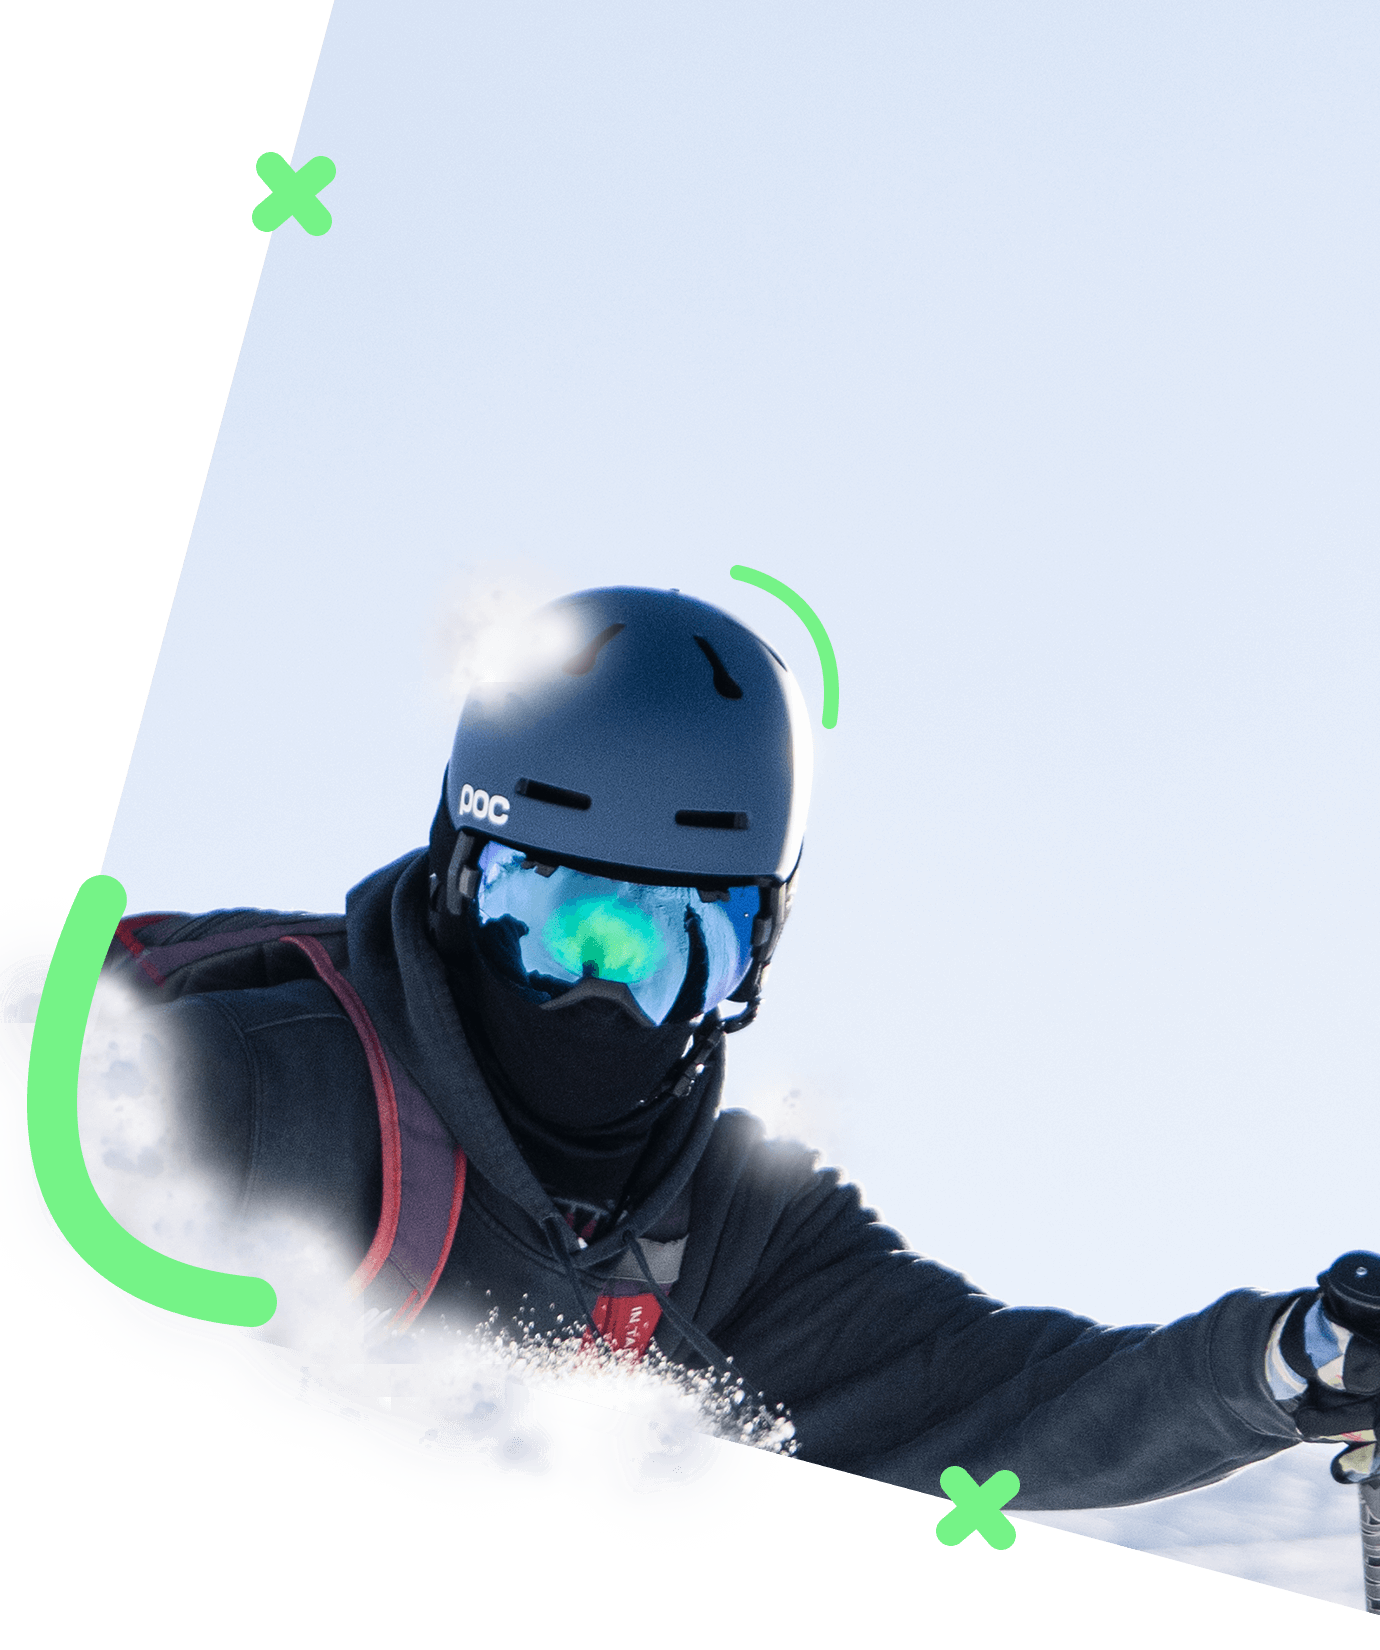 Illustration skieur Pyrénéen avec masque